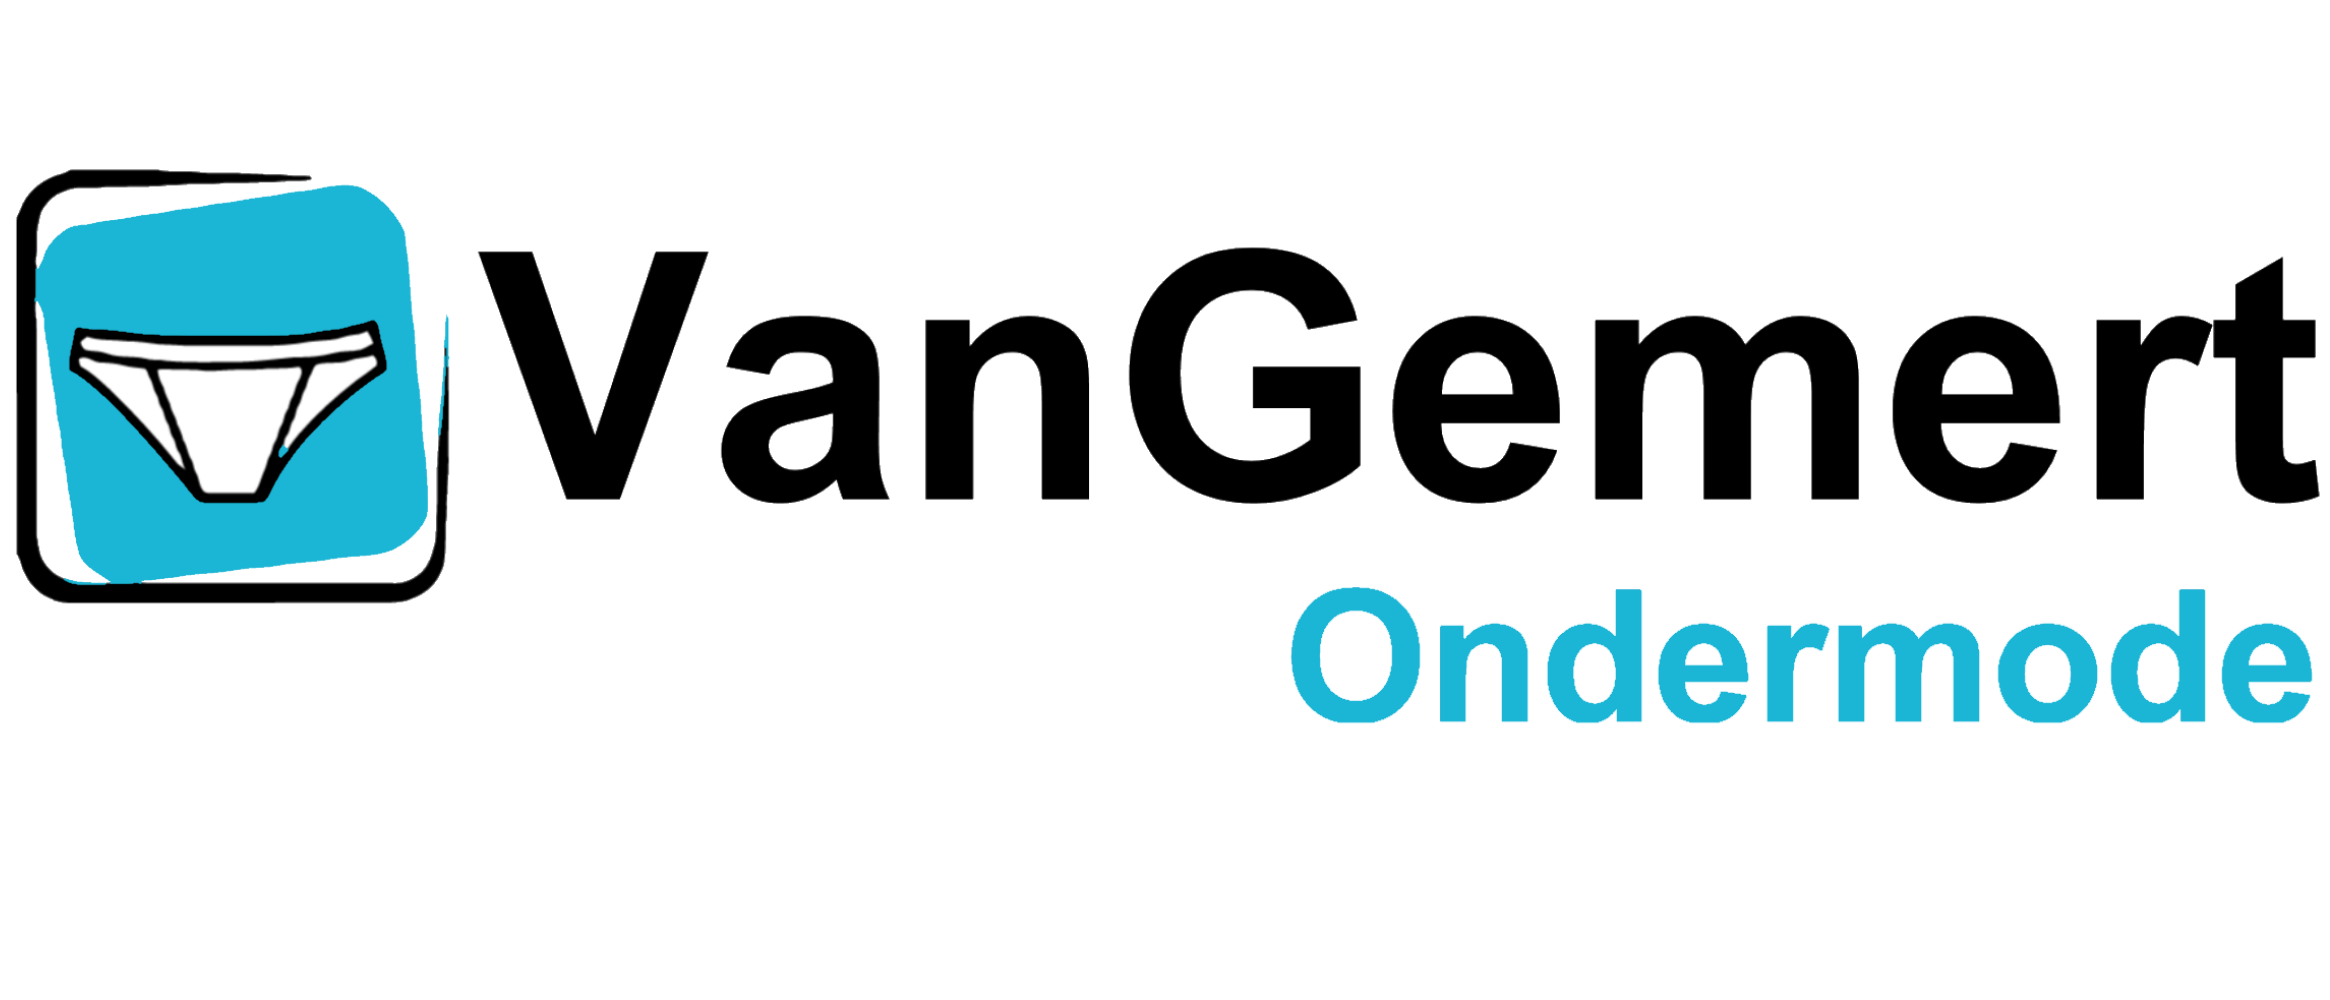 VanGemertondermode.nl